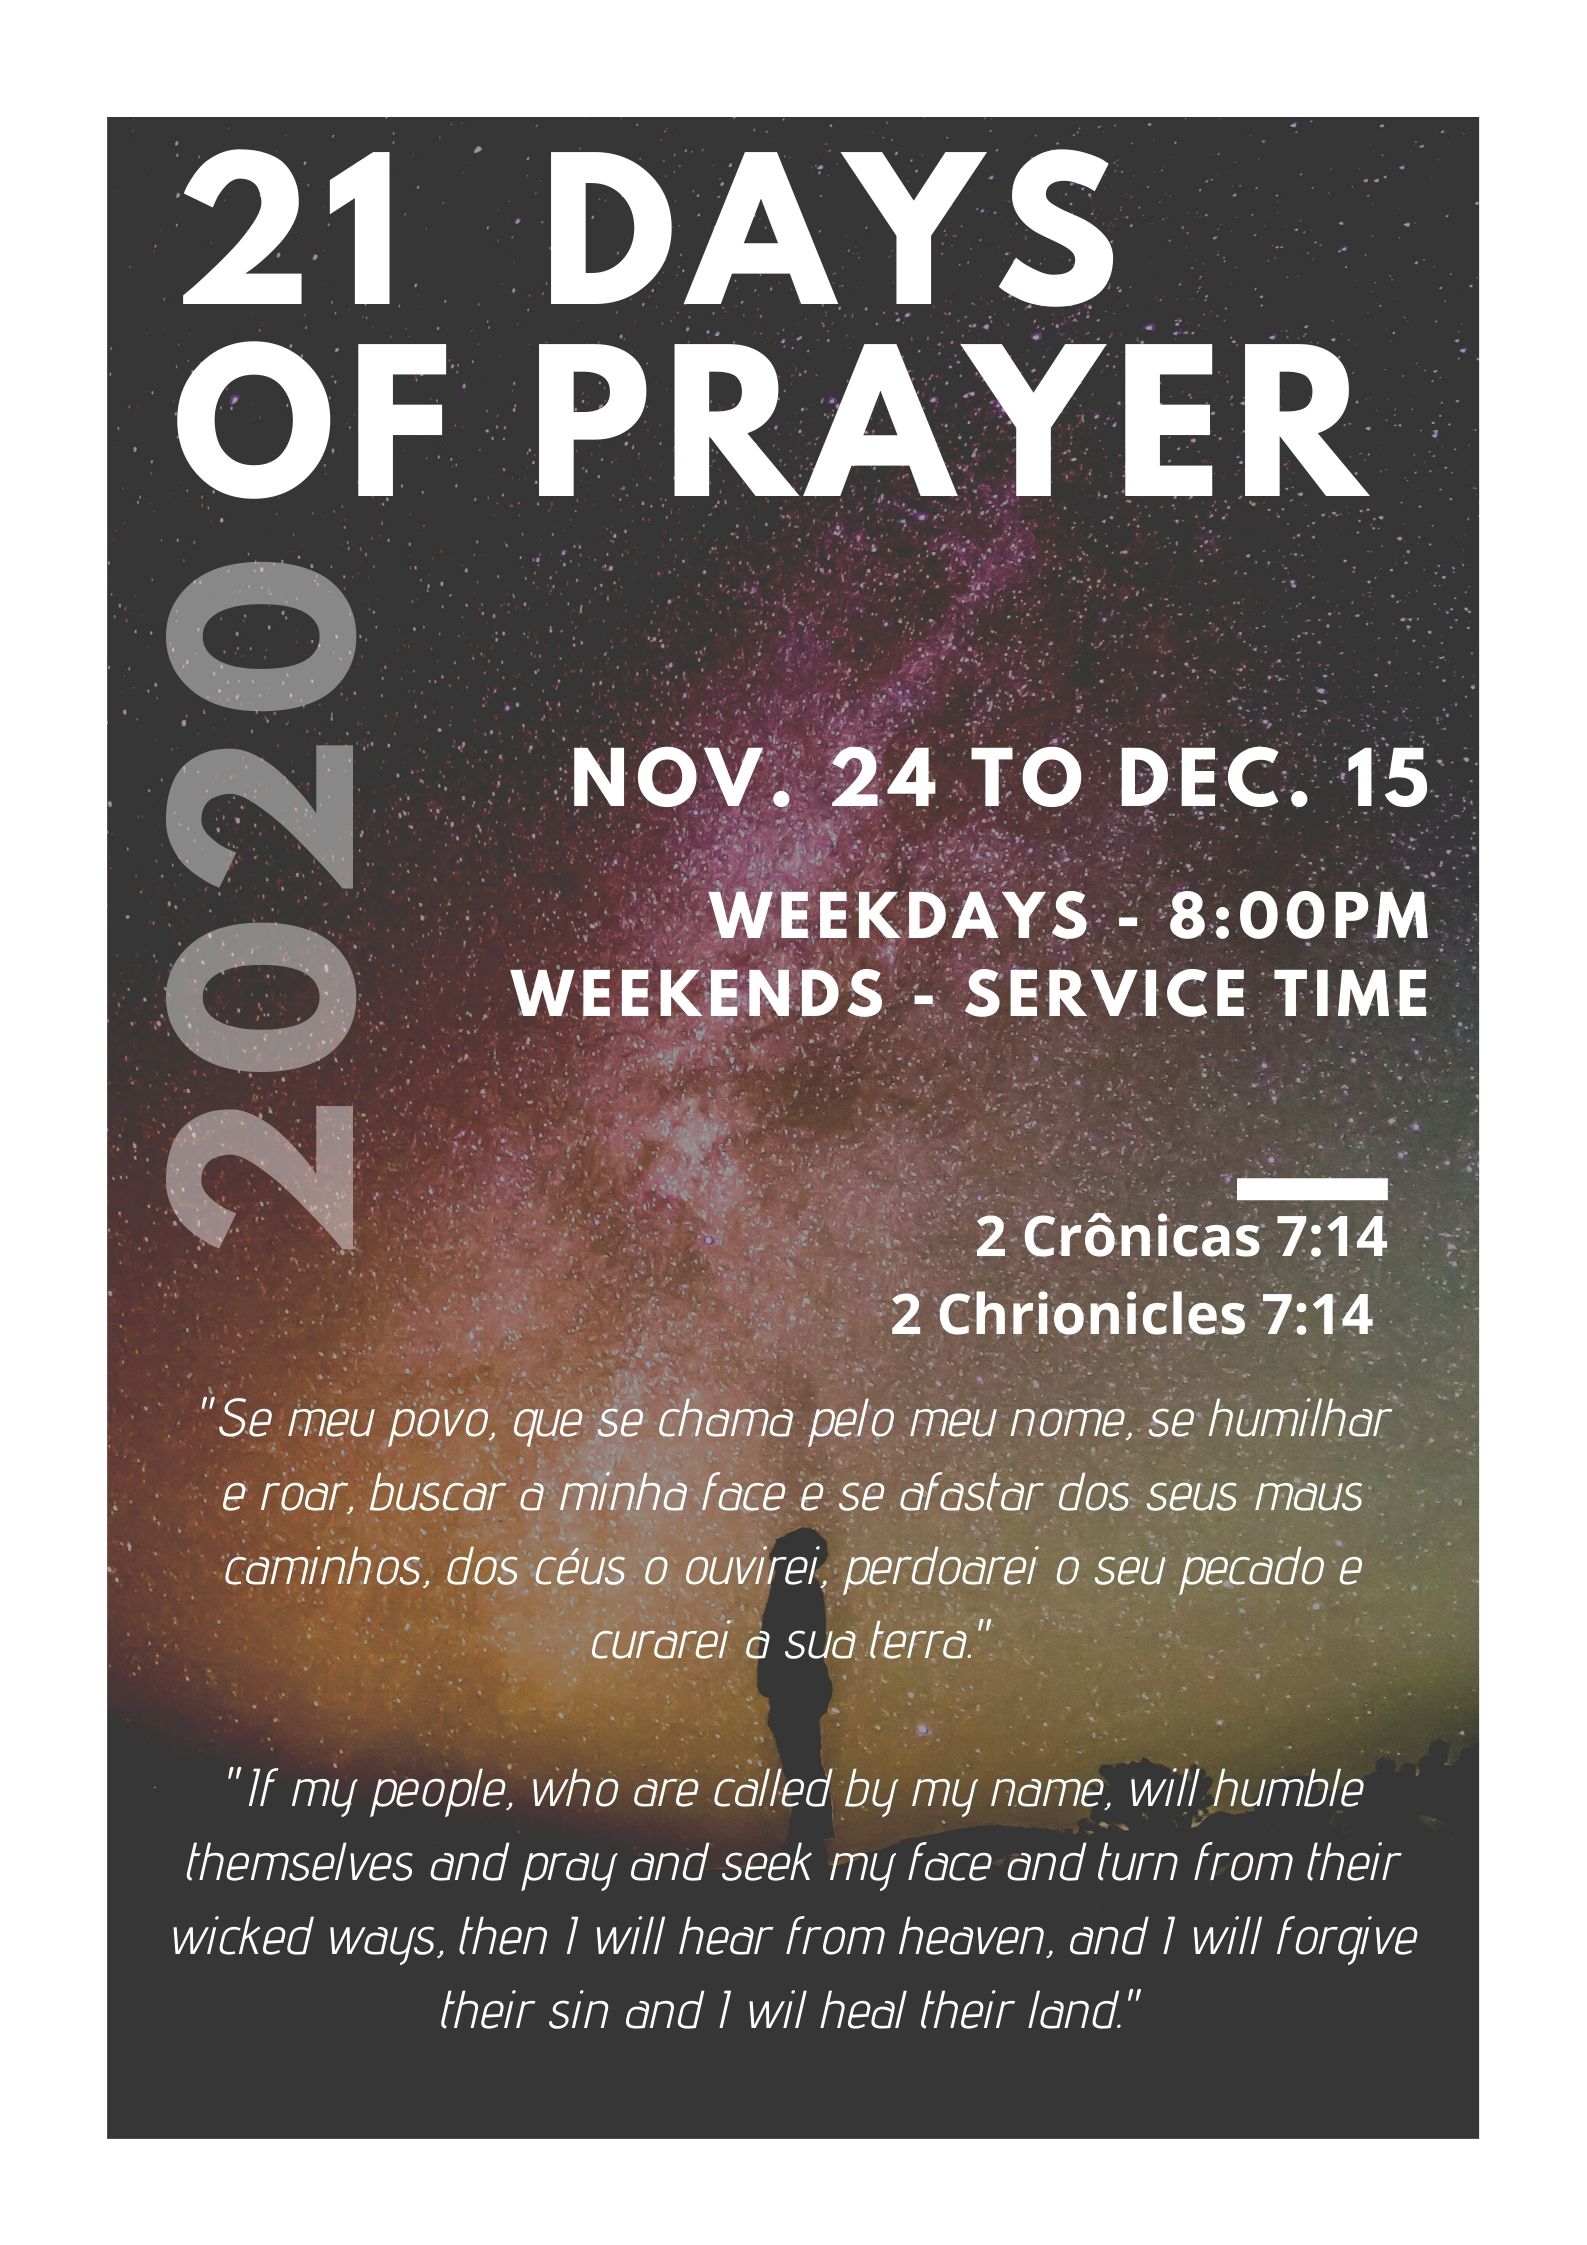 21 Days of Prayer 2020